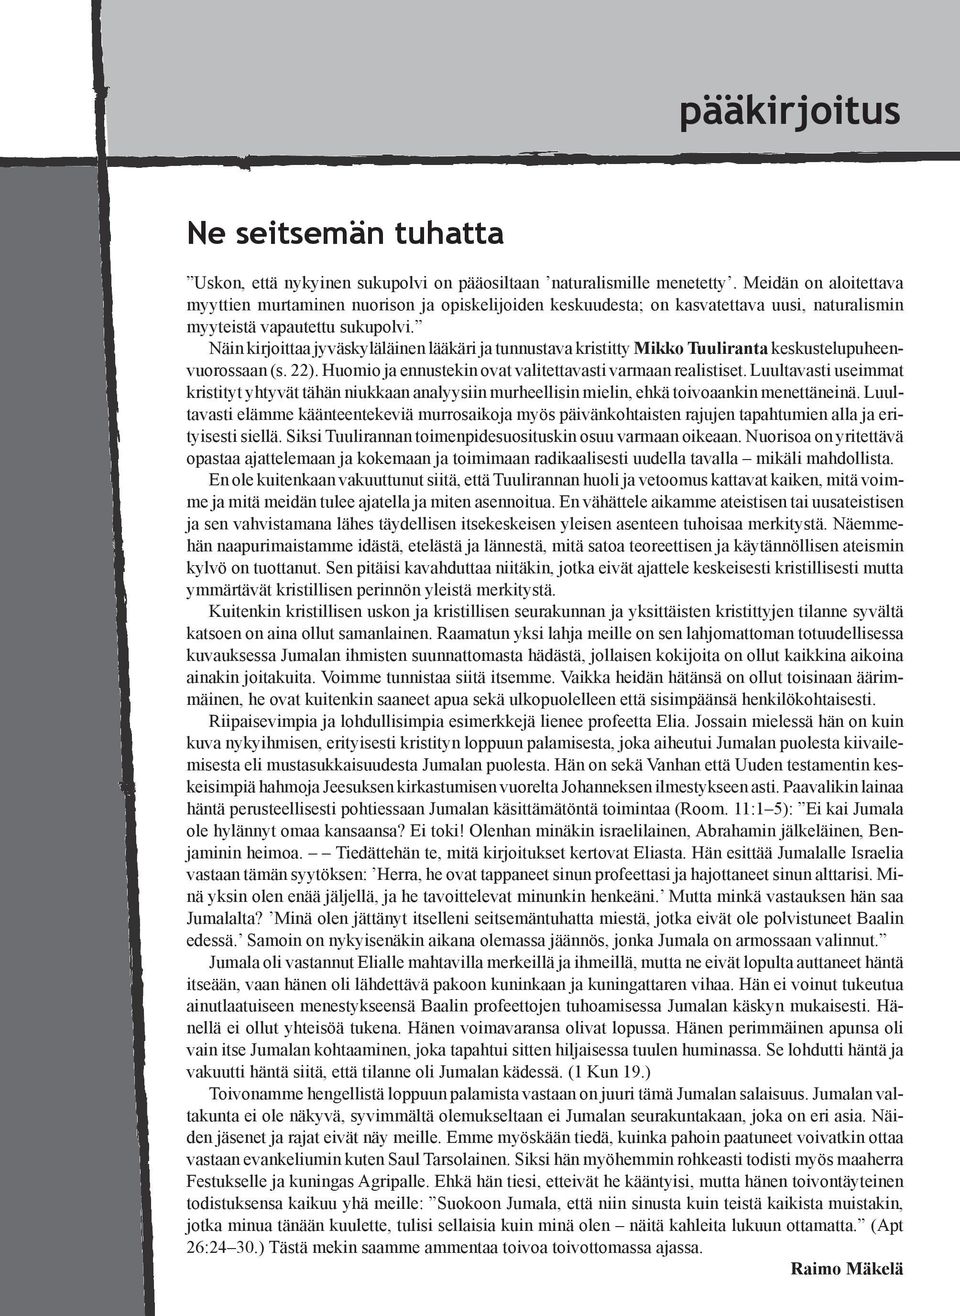 Näin kirjoittaa jyväskyläläinen lääkäri ja tunnustava kristitty Mikko Tuuliranta keskustelupuheenvuorossaan (s. 22). Huomio ja ennustekin ovat valitettavasti varmaan realistiset.